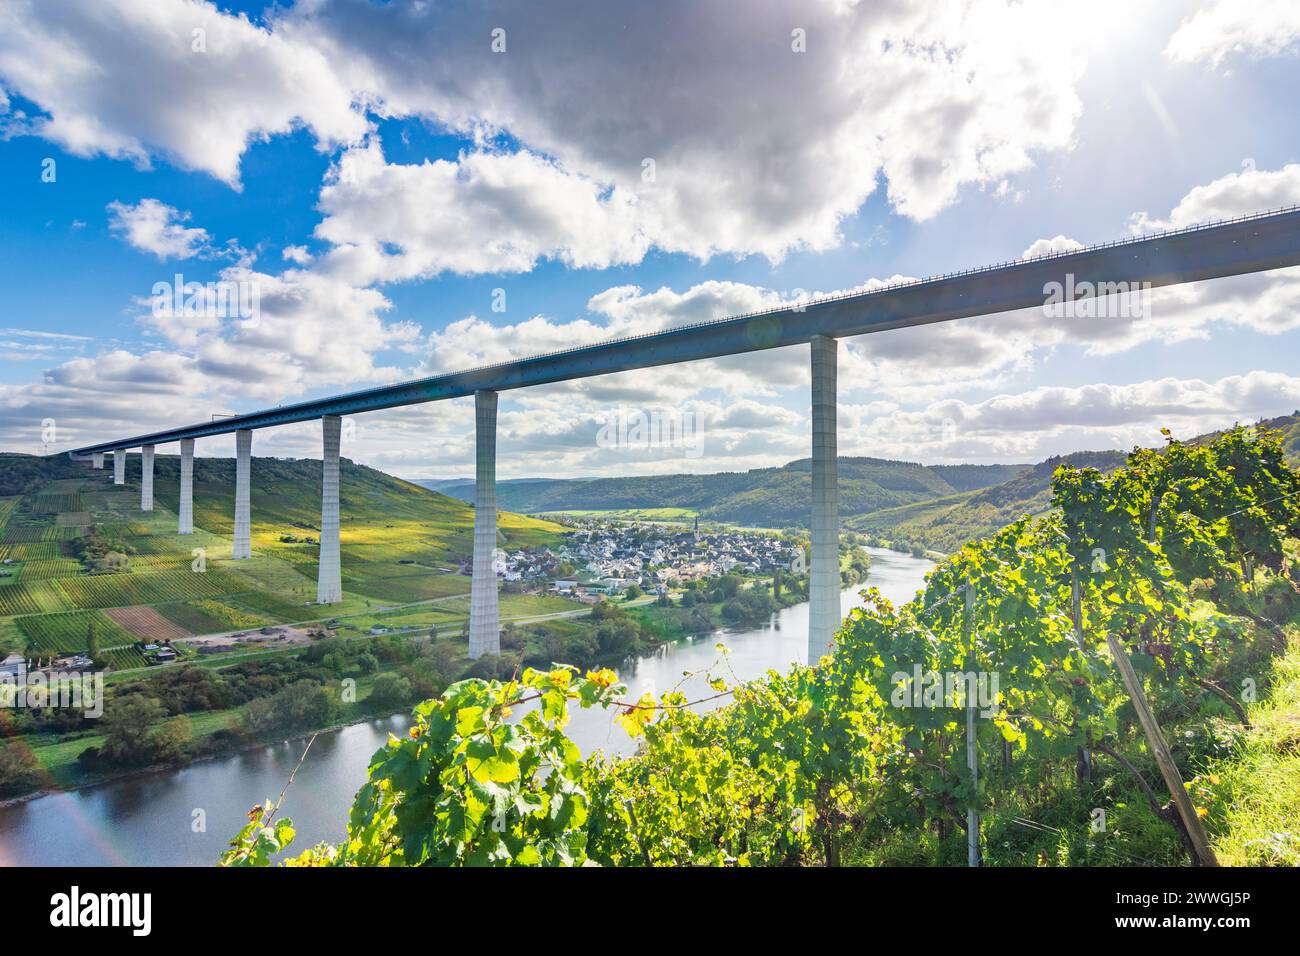 Zeltingen-Rachtig : Hochmoselbrücke (Pont de la haute Moselle), rivière Moselle (Moselle), vignoble, village Zeltingen-Rachtig à Moselle, Rhénanie-Palatinat, Rhinel Banque D'Images